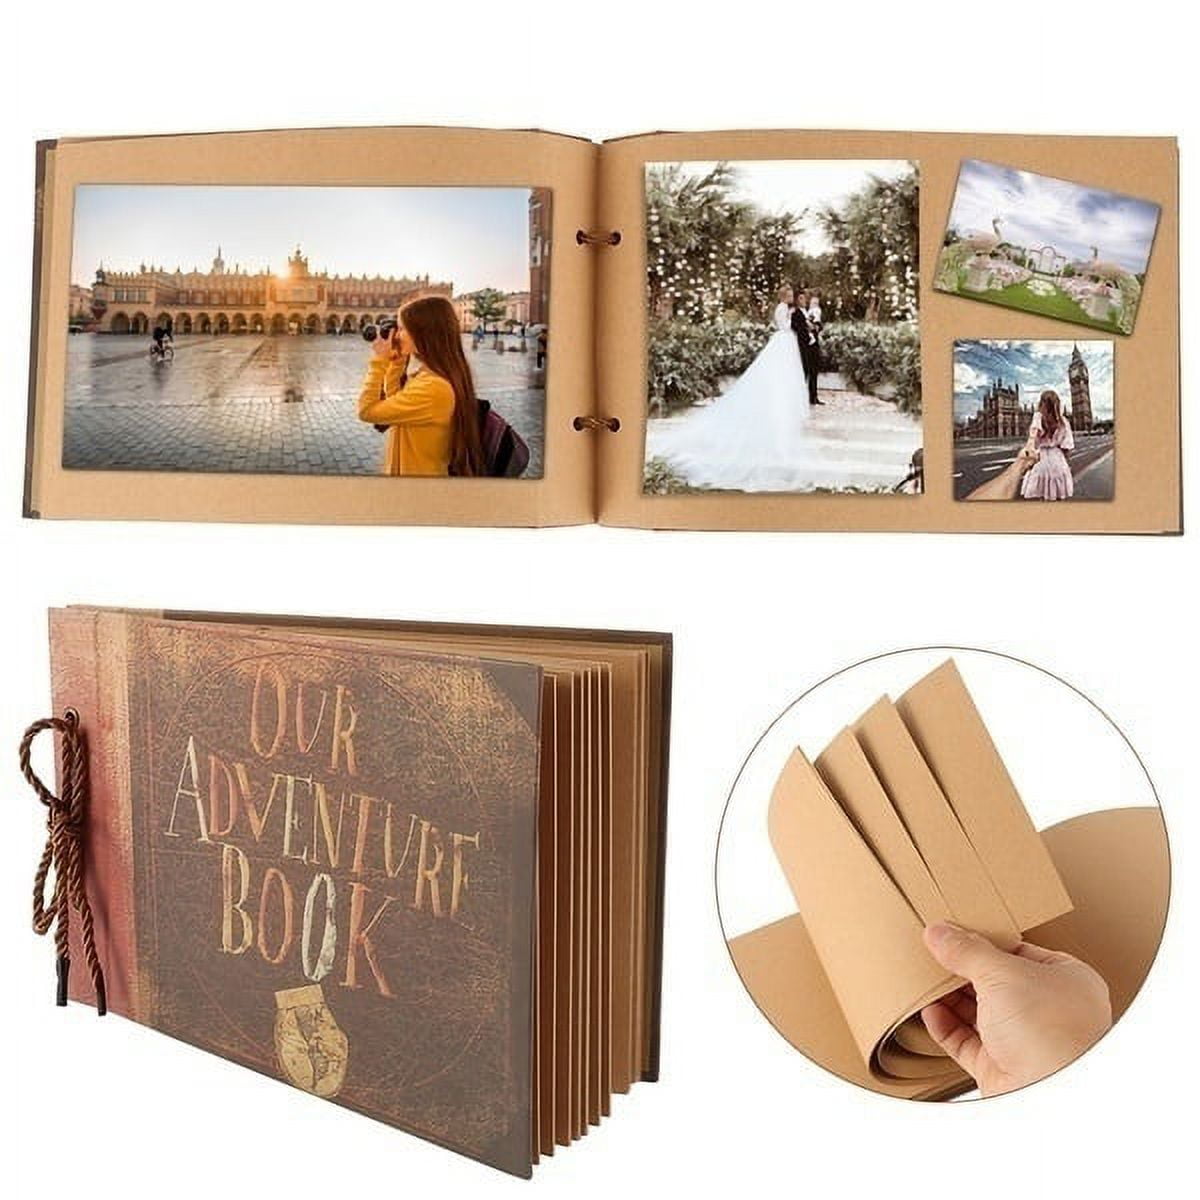 DIY Handmade Our Adventure Book Photo Album Scrapbook Album + Set Album Accessories, Retro Album, Wedding Photo Album, Anniversary